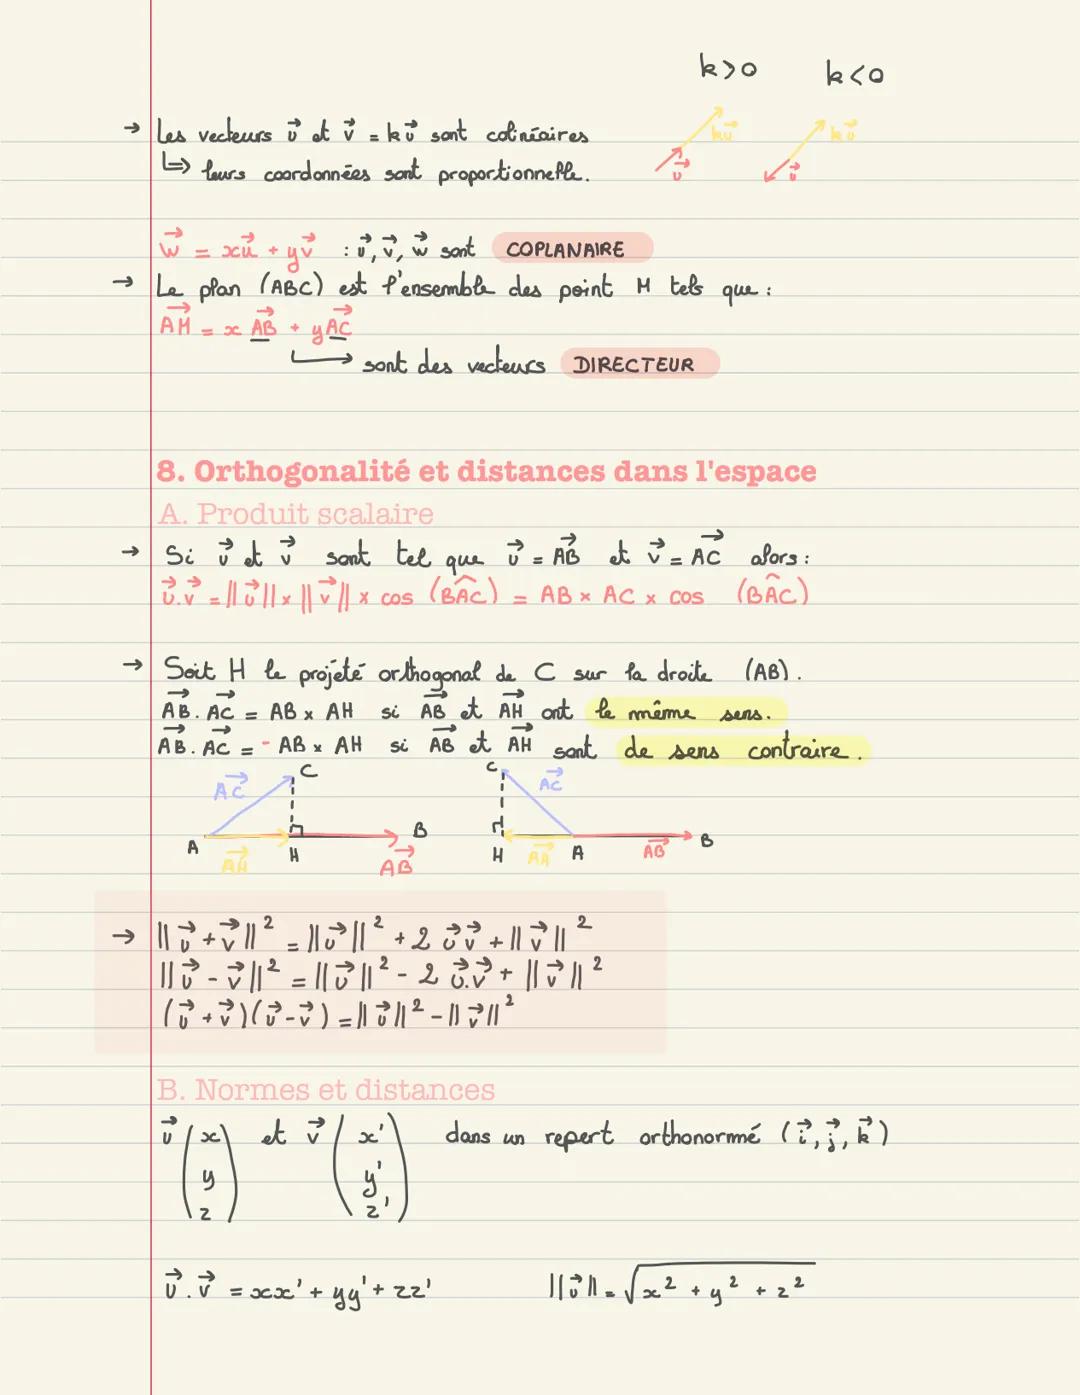 MATHEMATIQUES Révision cours terminale
Mathématiques
SOMMAIRE:
● Limites de suites
● Limites de fonctions
●
Décidabilité, convexité, continu